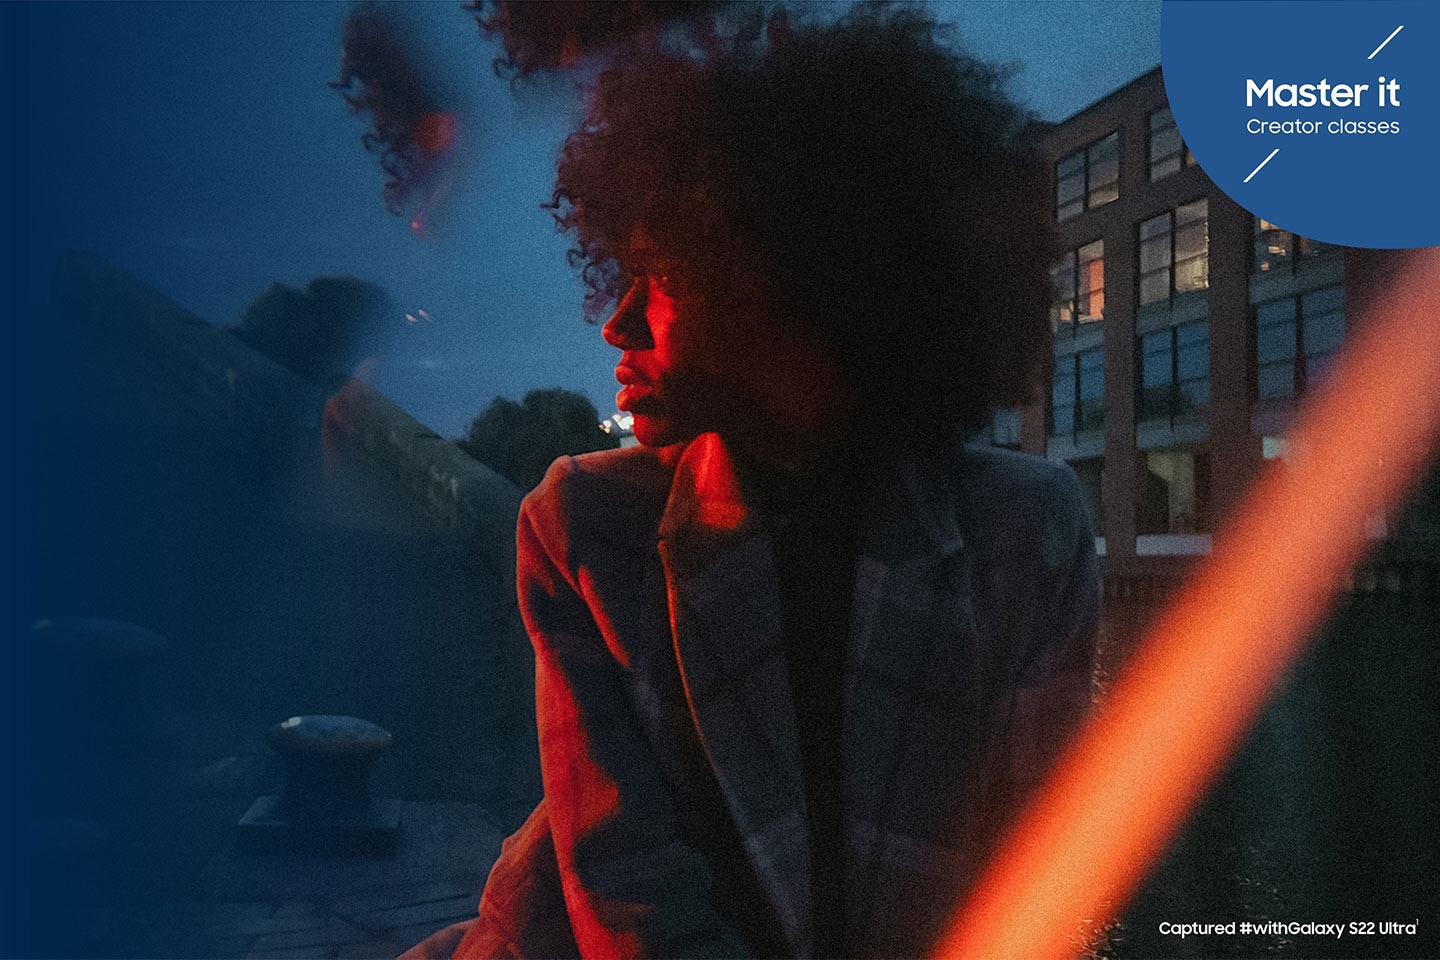 Một người phụ nữ mặc áo khoác nhìn sang trái, được chiếu sáng tinh tế bởi đèn đỏ phía trước bầu trời xanh. Lớp học Master it Creator được chụp #withGalaxy S22 Ultra1